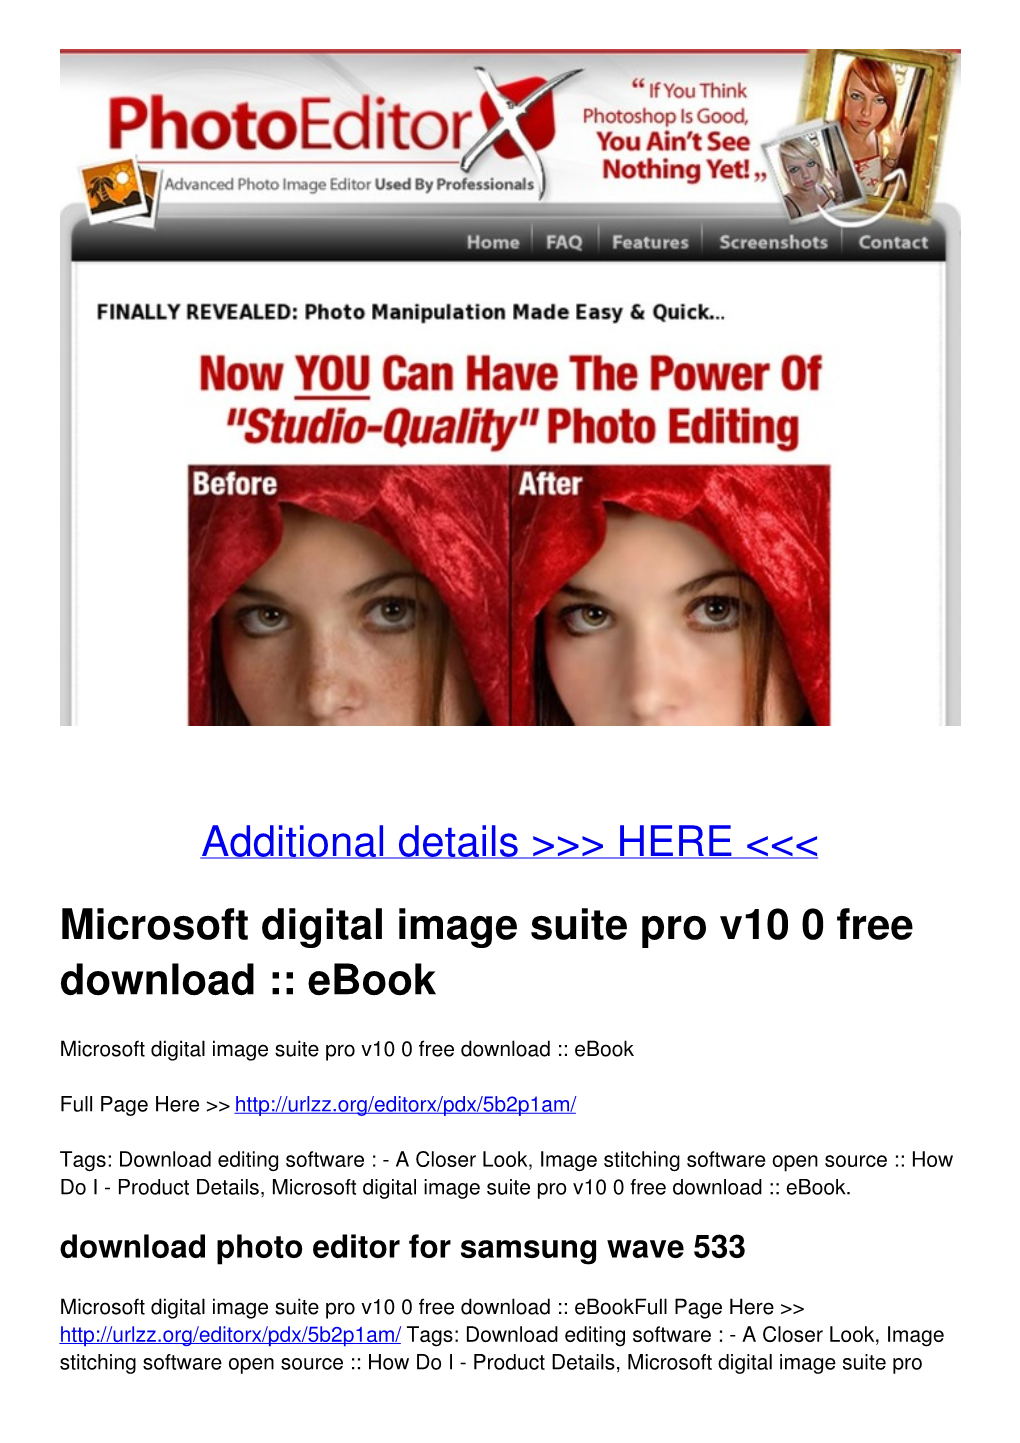 Microsoft Digital Image Suite Pro V10 0 Free Download :: Ebook